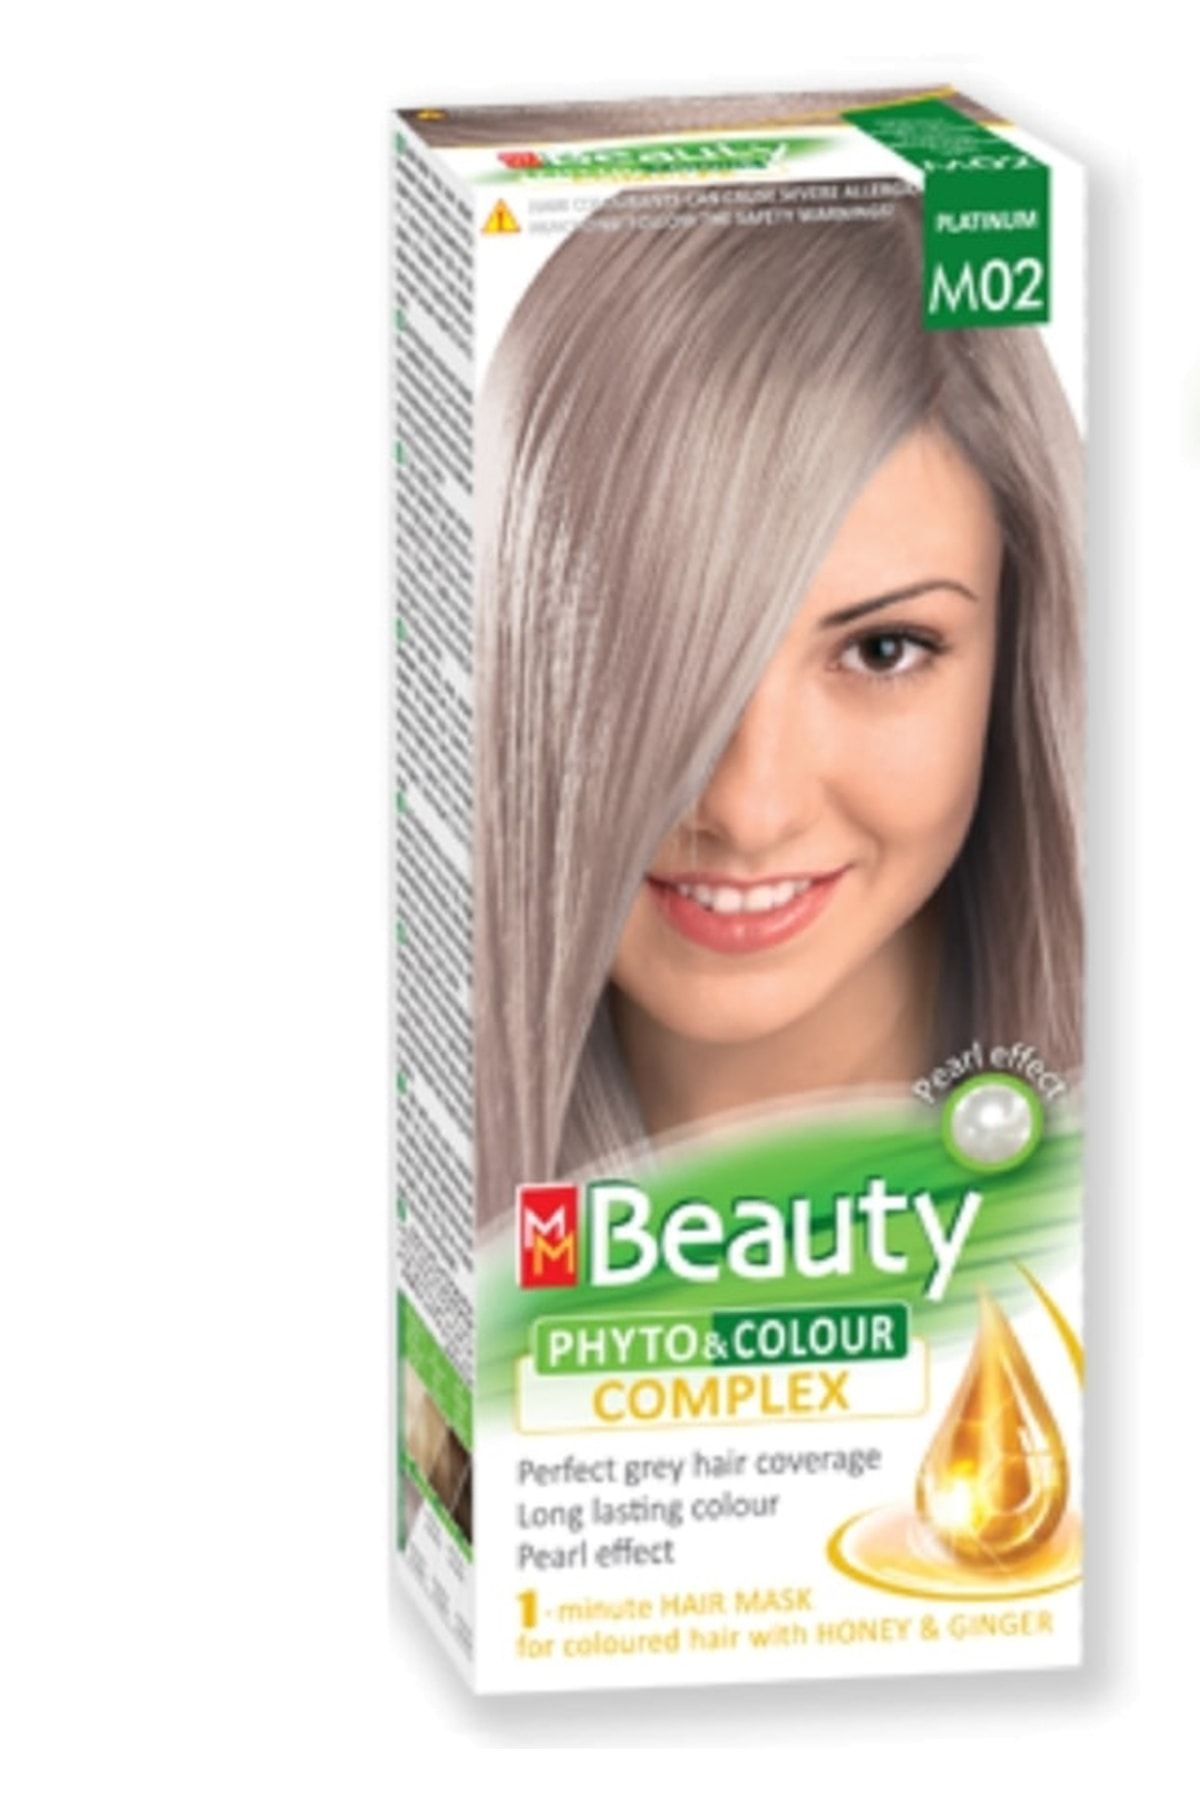 MM Beauty Saç Boyası M02 ( Platin ) Set Boya